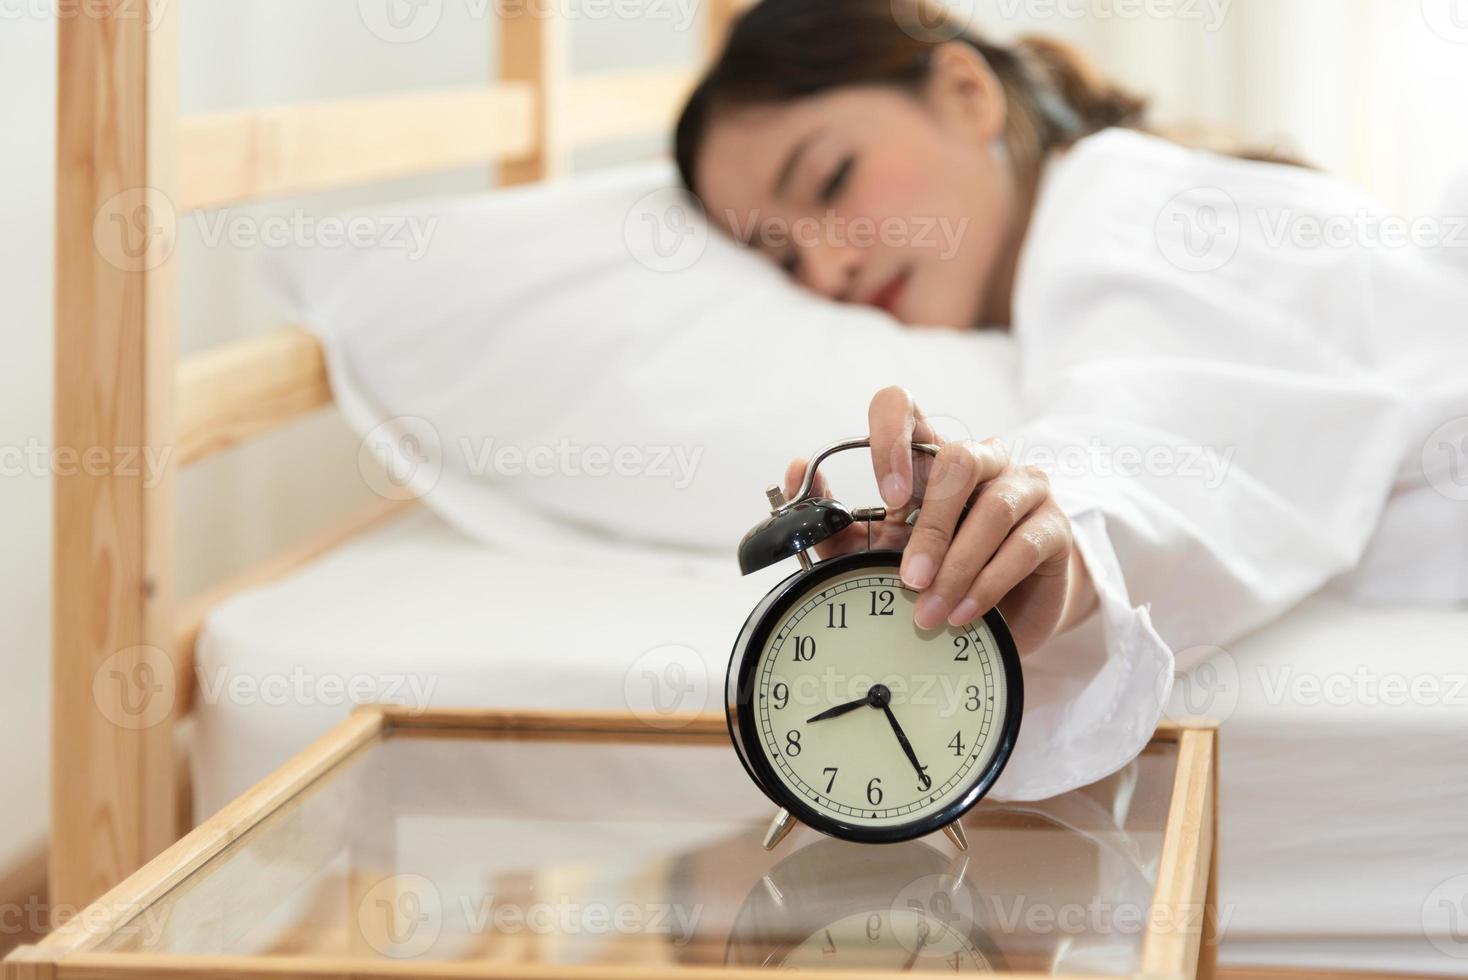 giovane donna asiatica di bellezza che spegne la sveglia in tarda mattinata foto